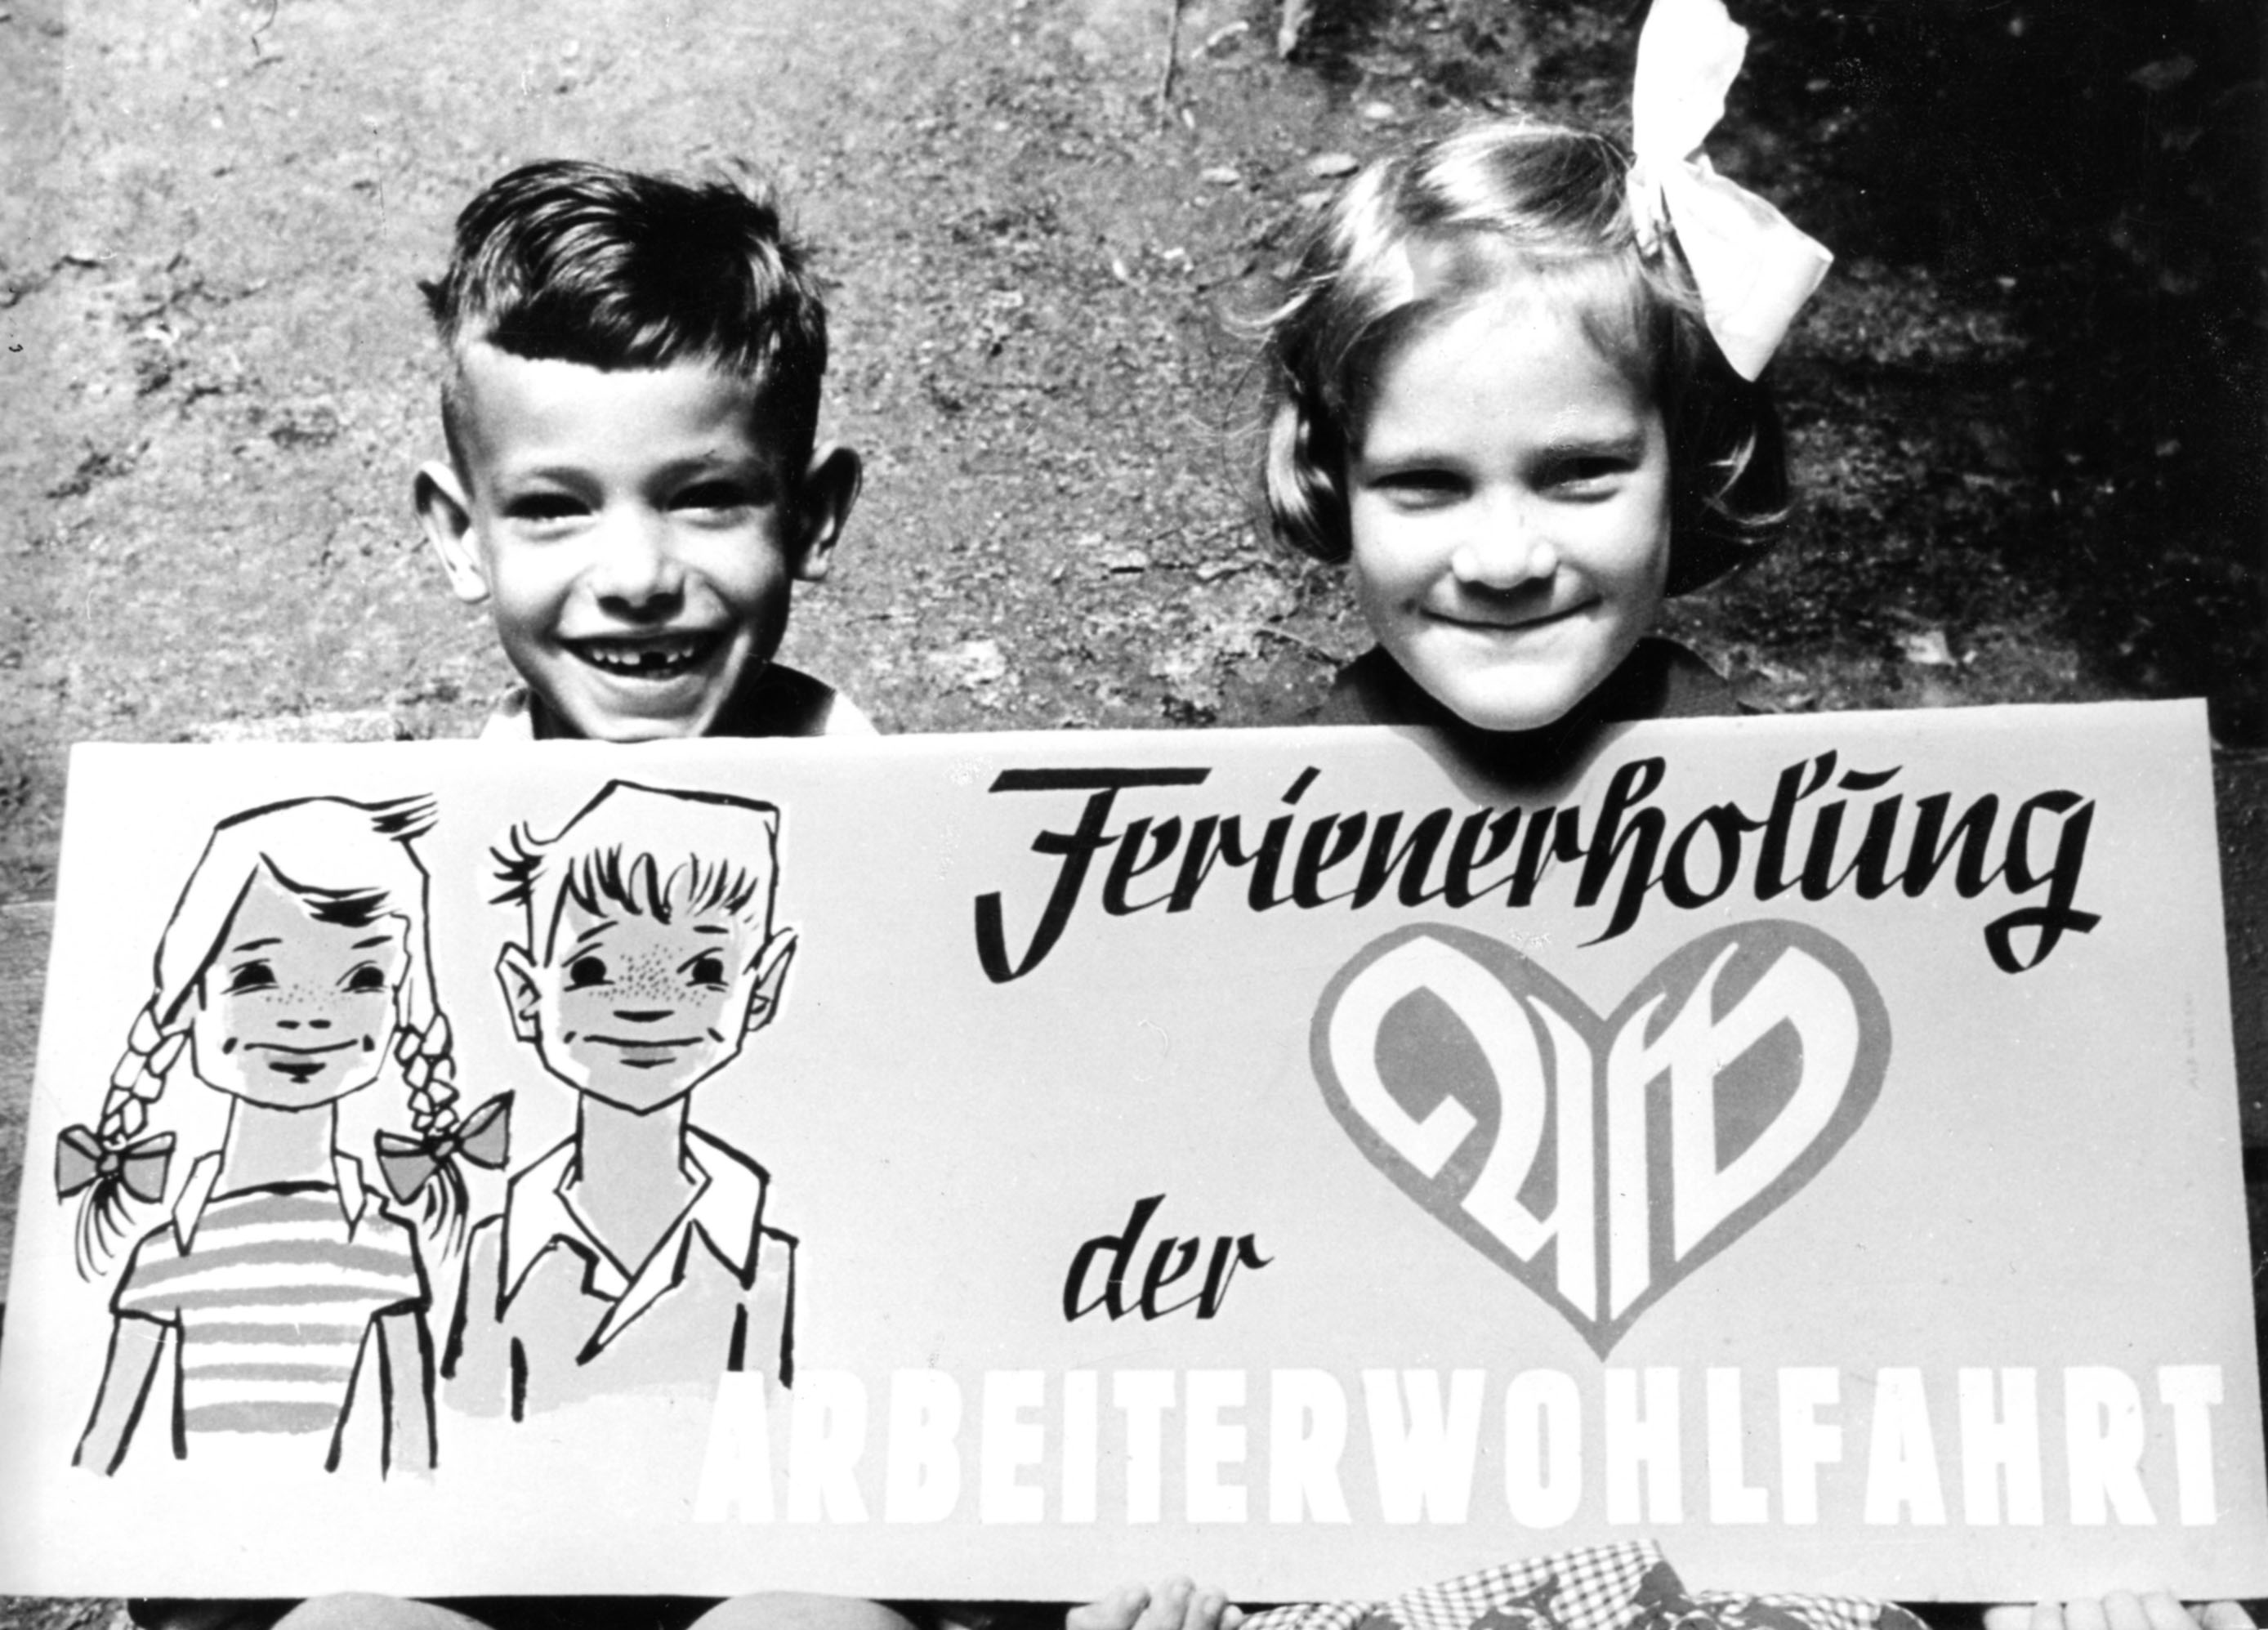 Ferienfreizeit der AWO historisches BIld mit lachenden Kindern einem Jungen und einem Mädchen und einem Plakat Ferienerholung